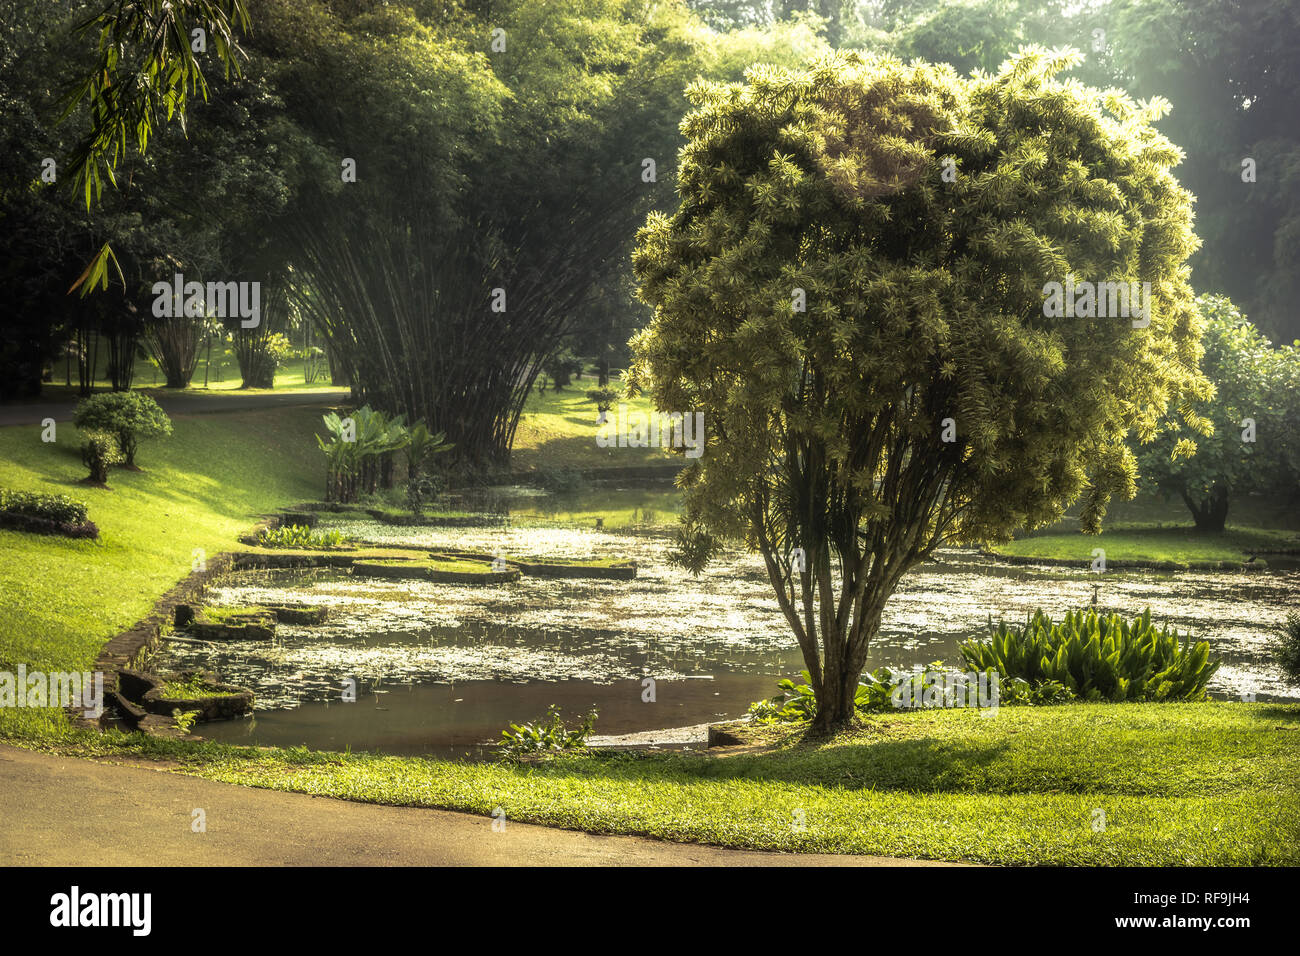 Botanic garden paysage avec la conception de paysage dans la région de Royal Garden au Sri Lanka Peradeniya Kandy environs Environs Banque D'Images